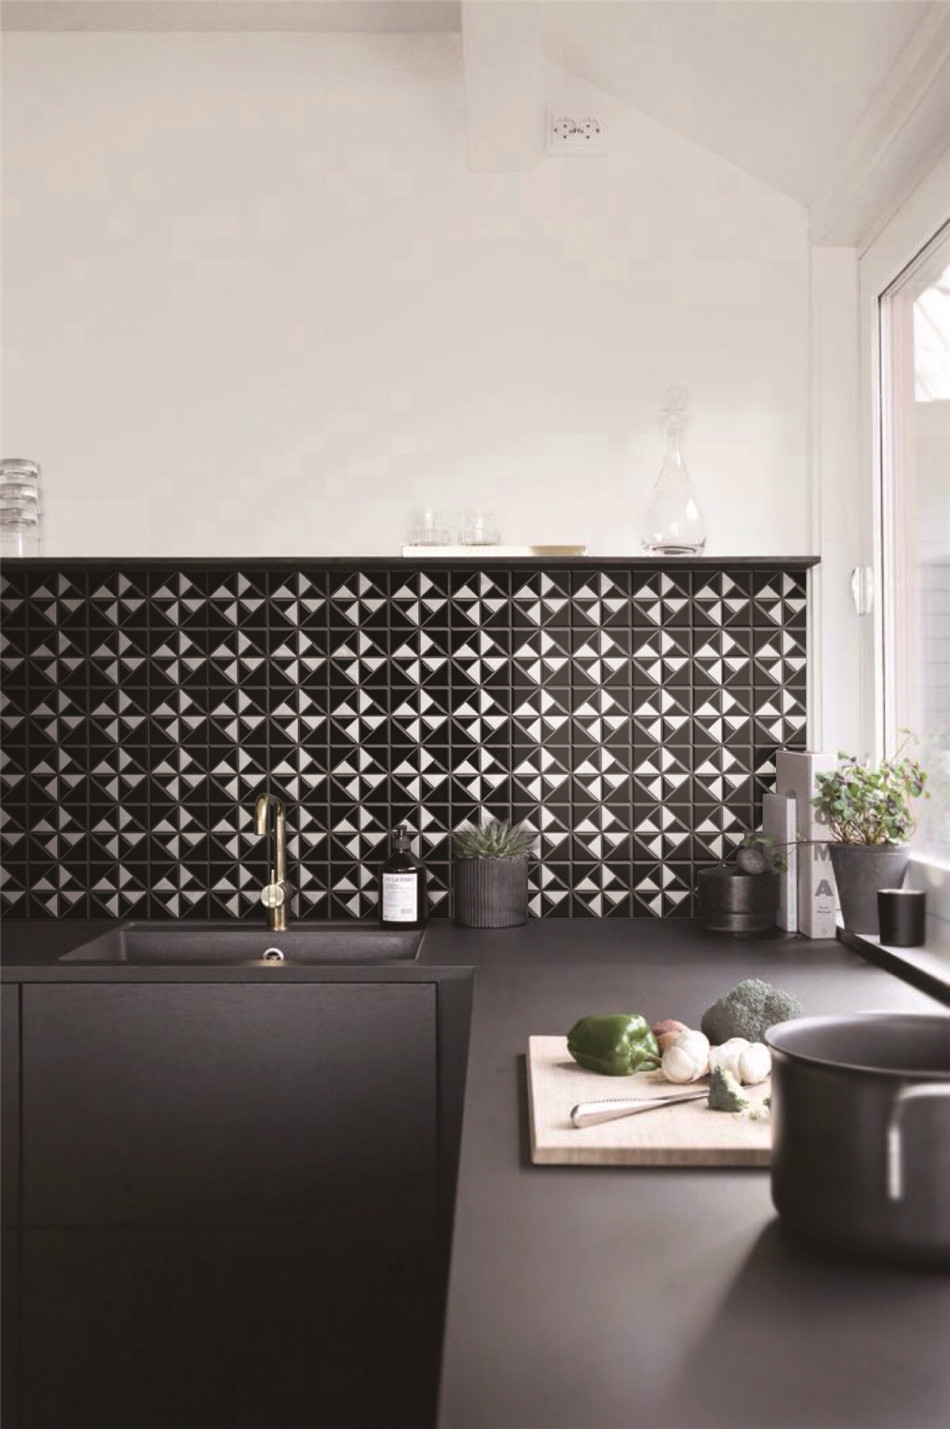 Black white kitchen backsplash tiles